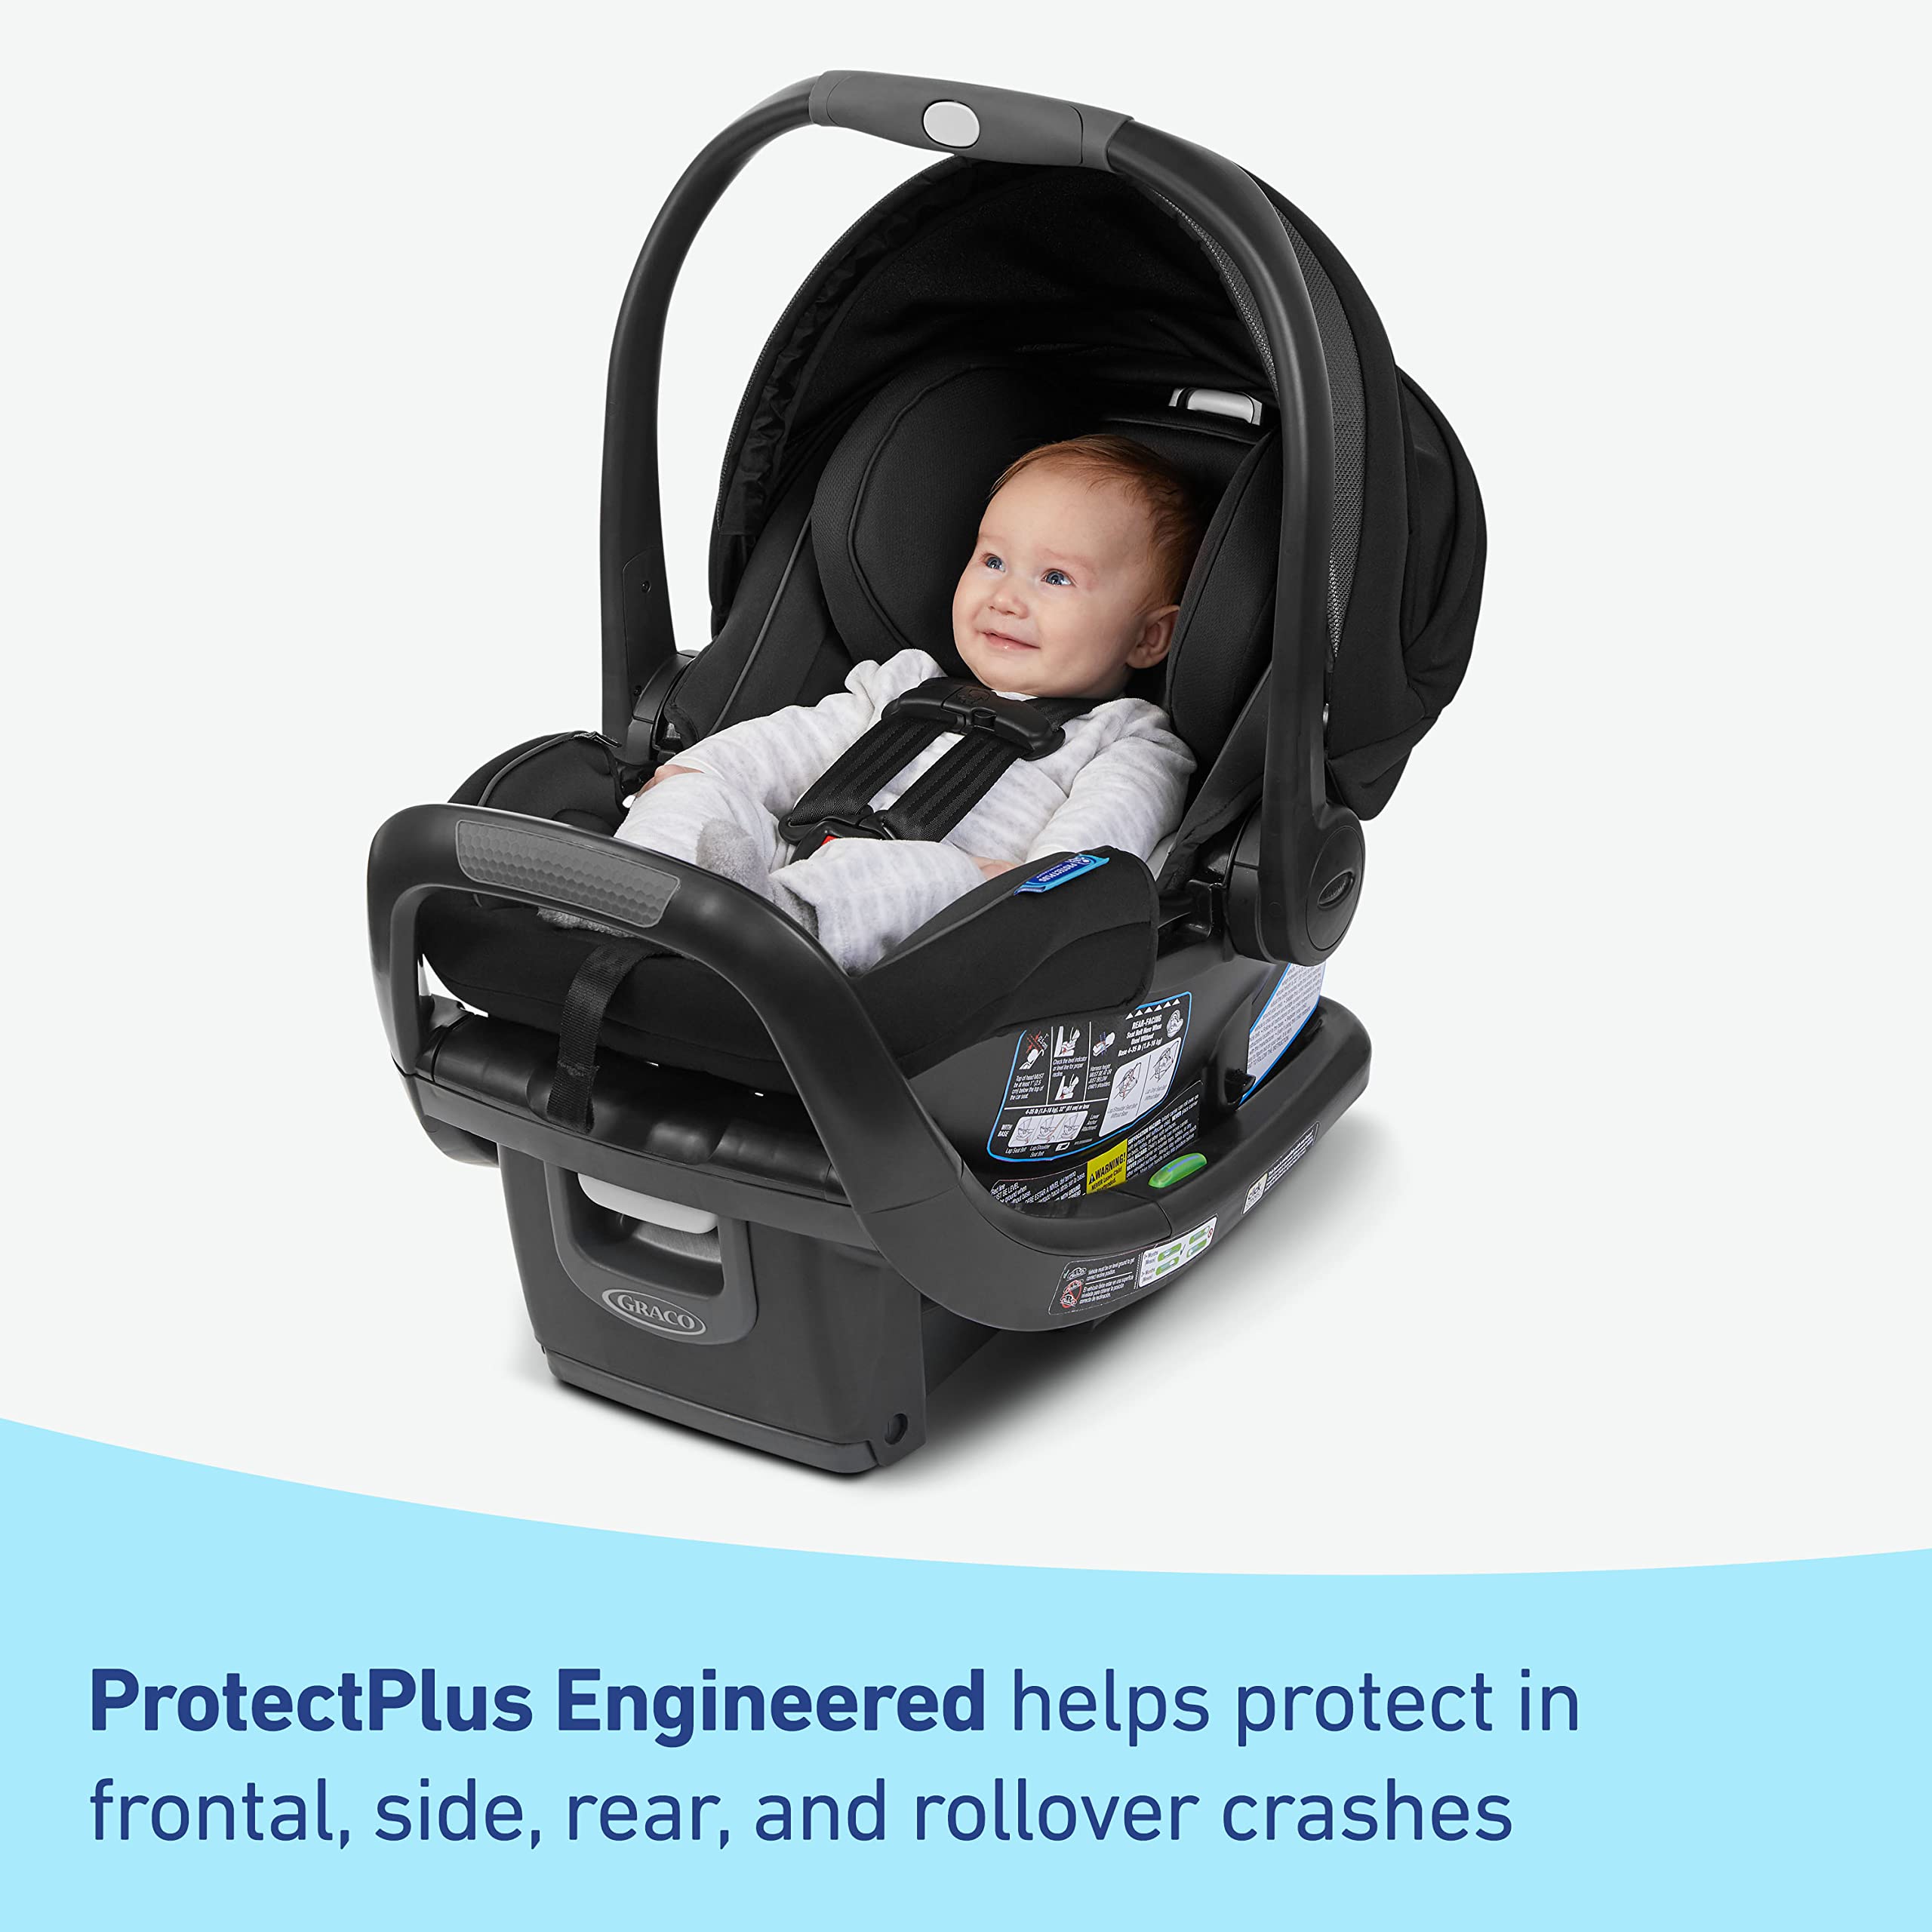 Graco® SnugRide® SnugFit 35 DLX Infant Car Seat, Maison